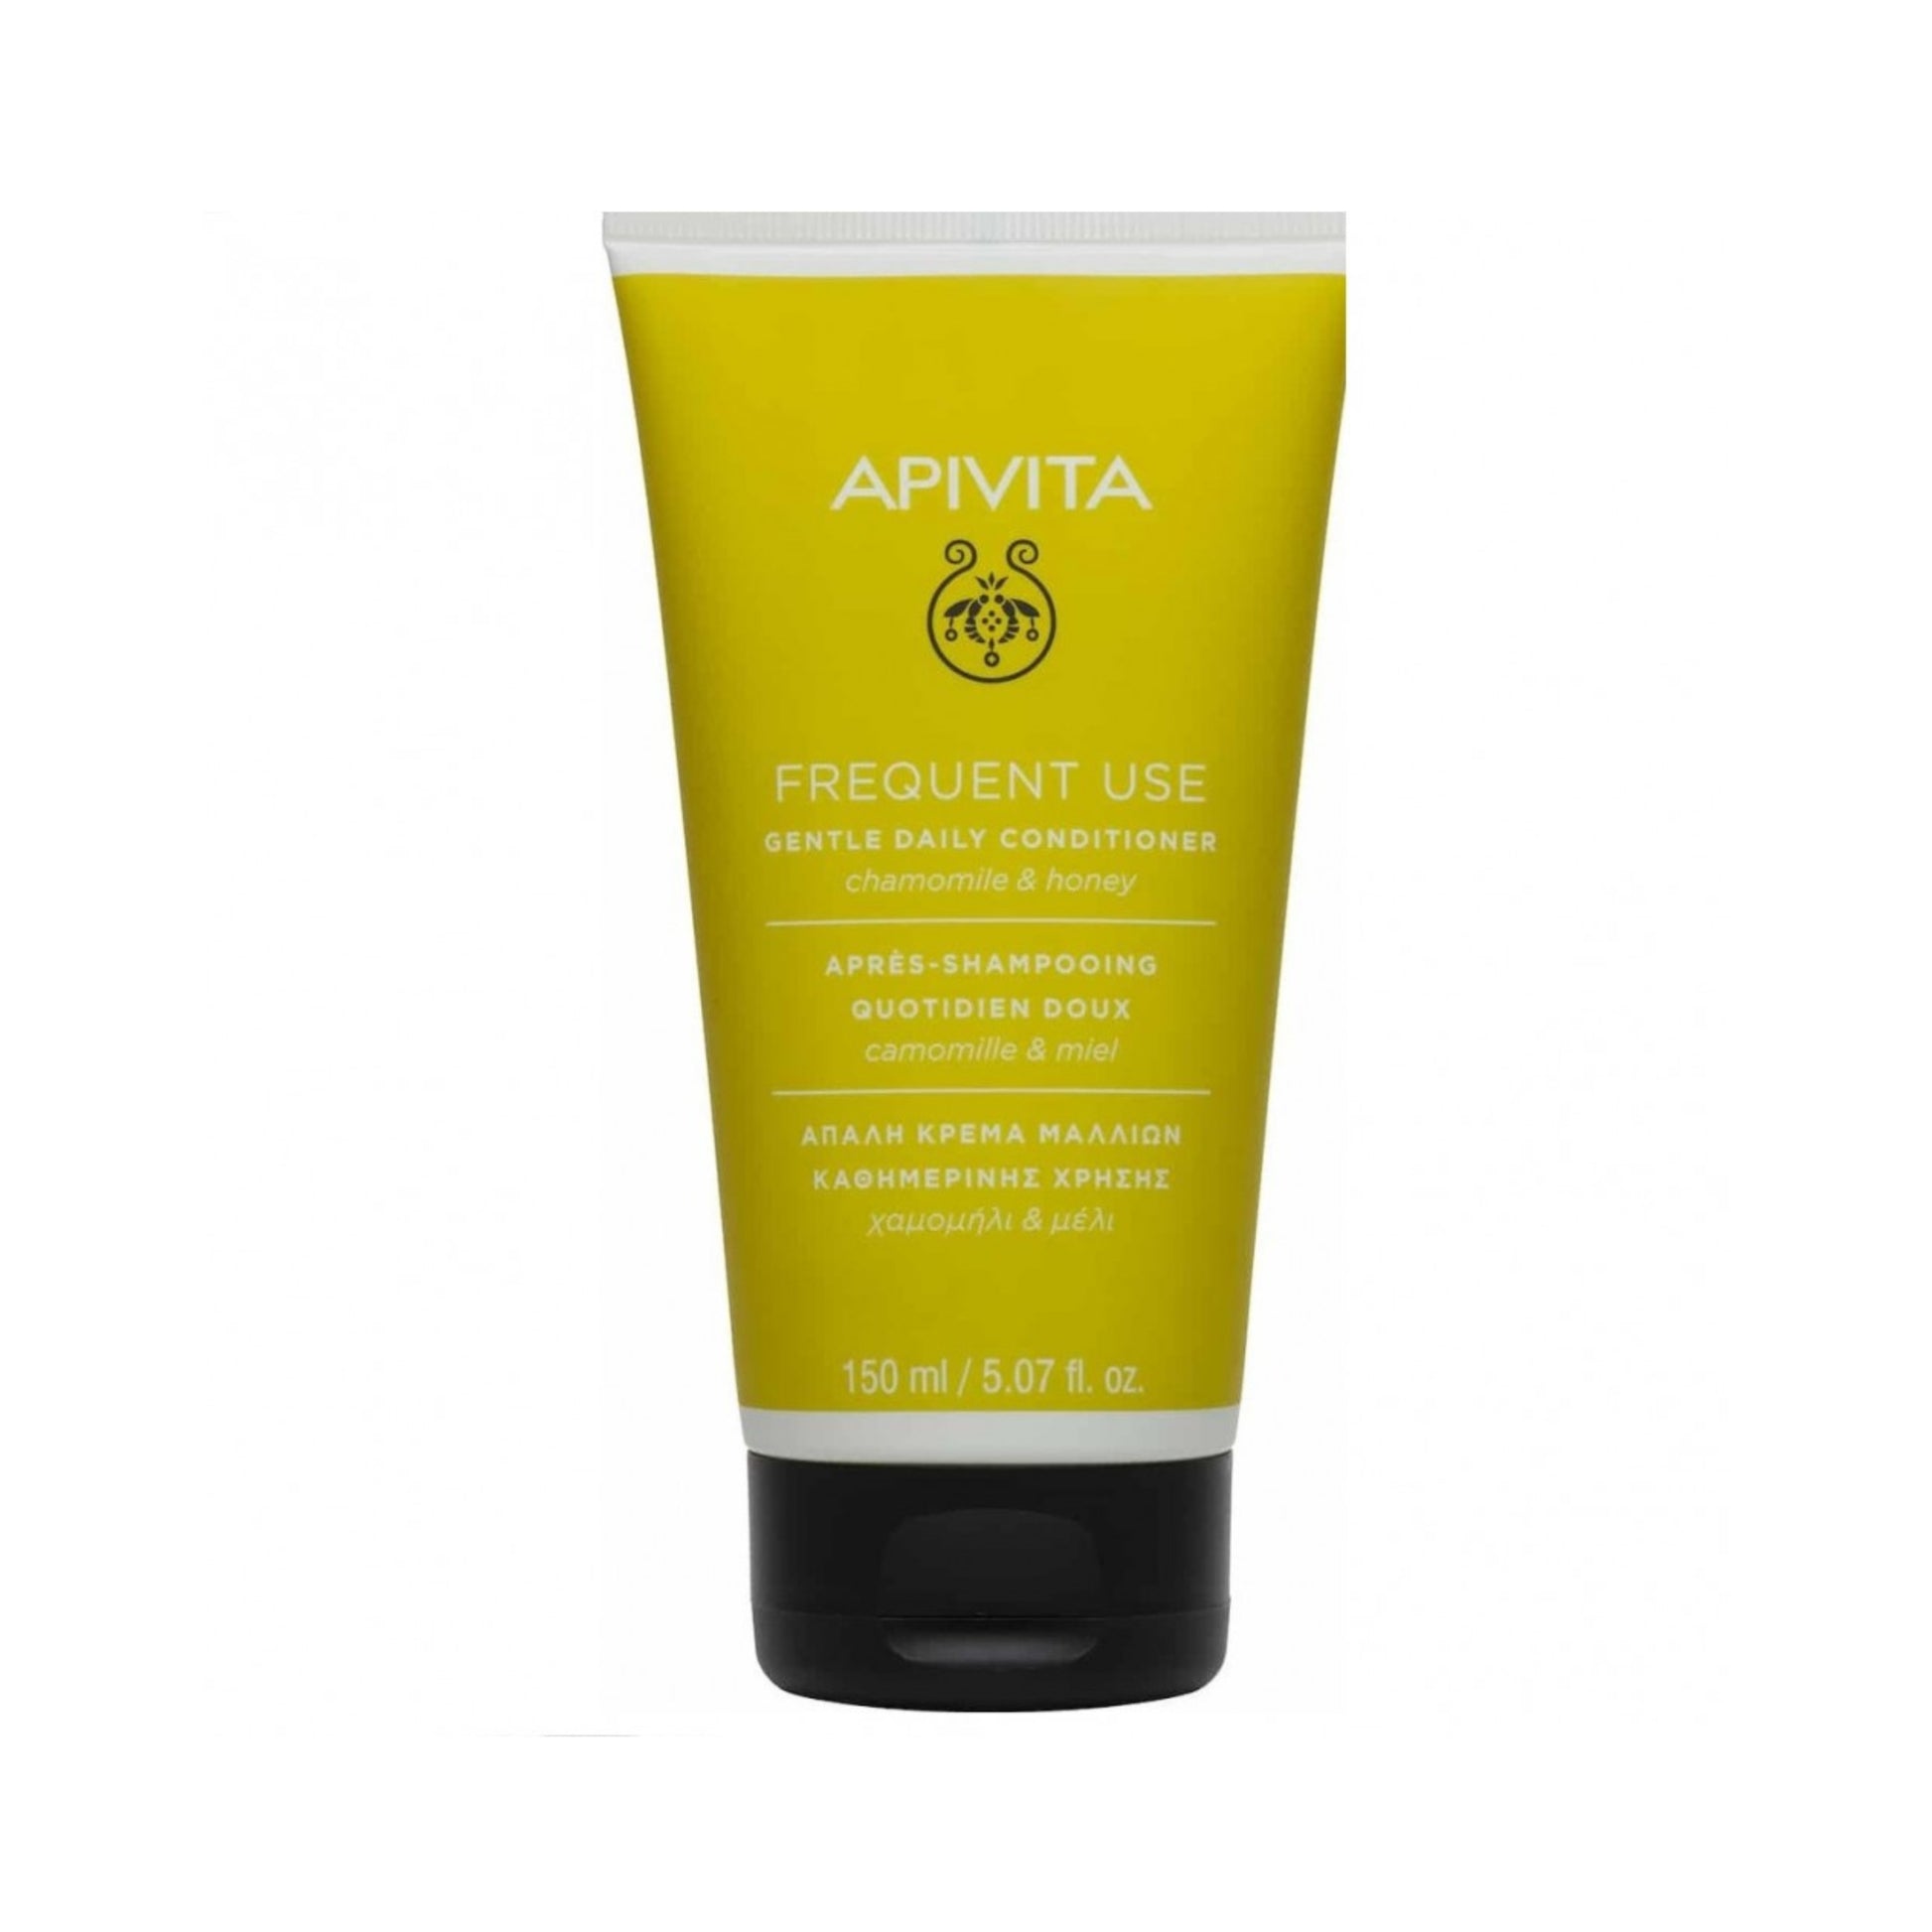 Apivita-Après-shampoing-Quotidien-Doux–150ml